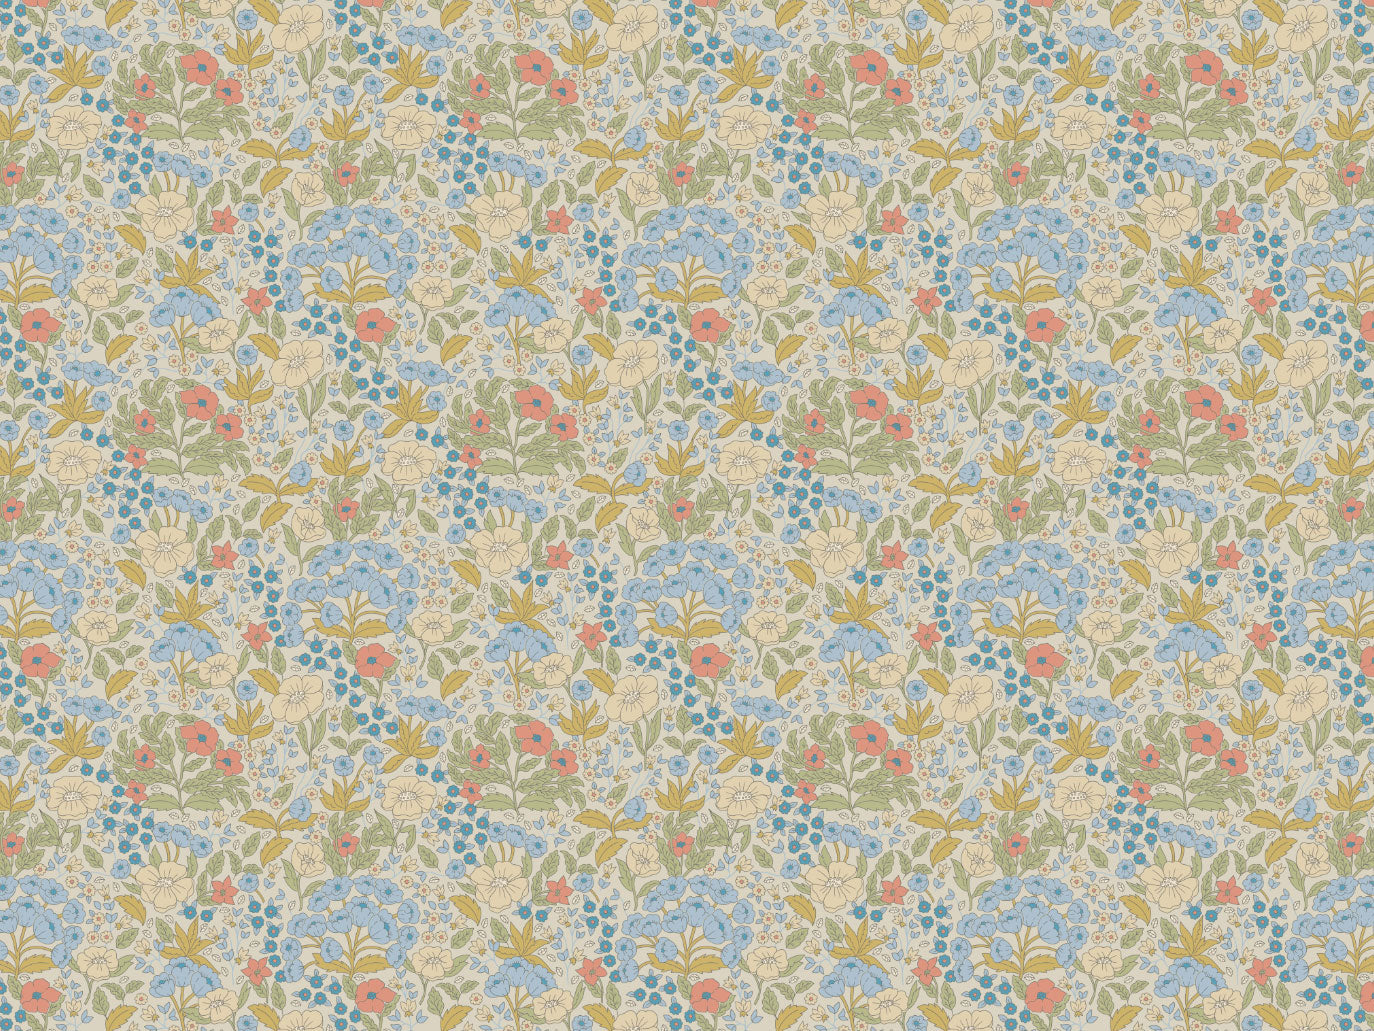 Summer Gray Wallpaper - Doris - Blue & Mustard